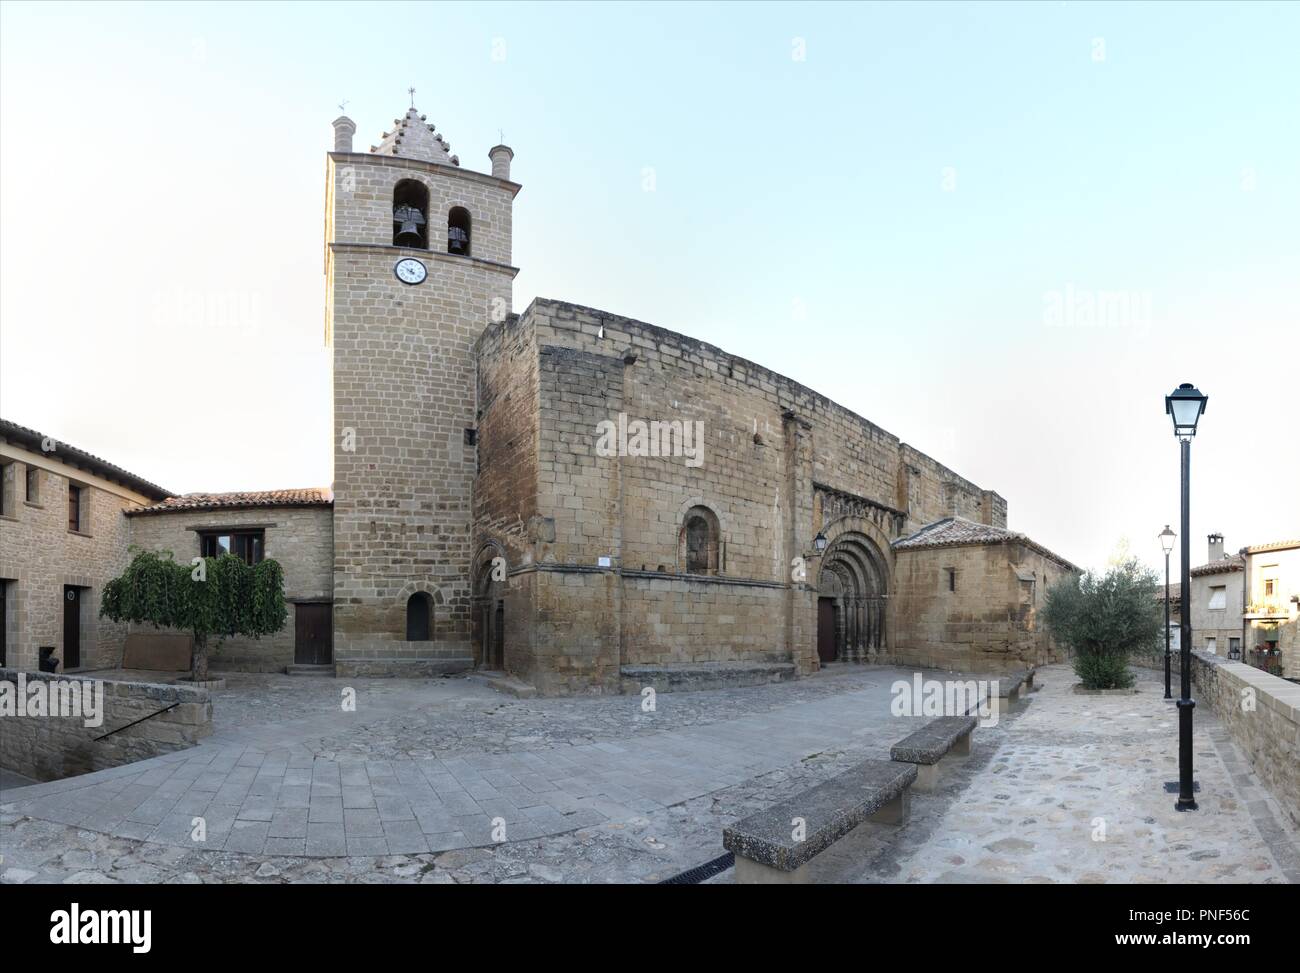 La romanica chiesetta di Nicola di Bari la chiesa (Iglesia de San Nicolas de Bari), con la torre campanaria barocca e la piazza in rural el Frago, Spagna Foto Stock